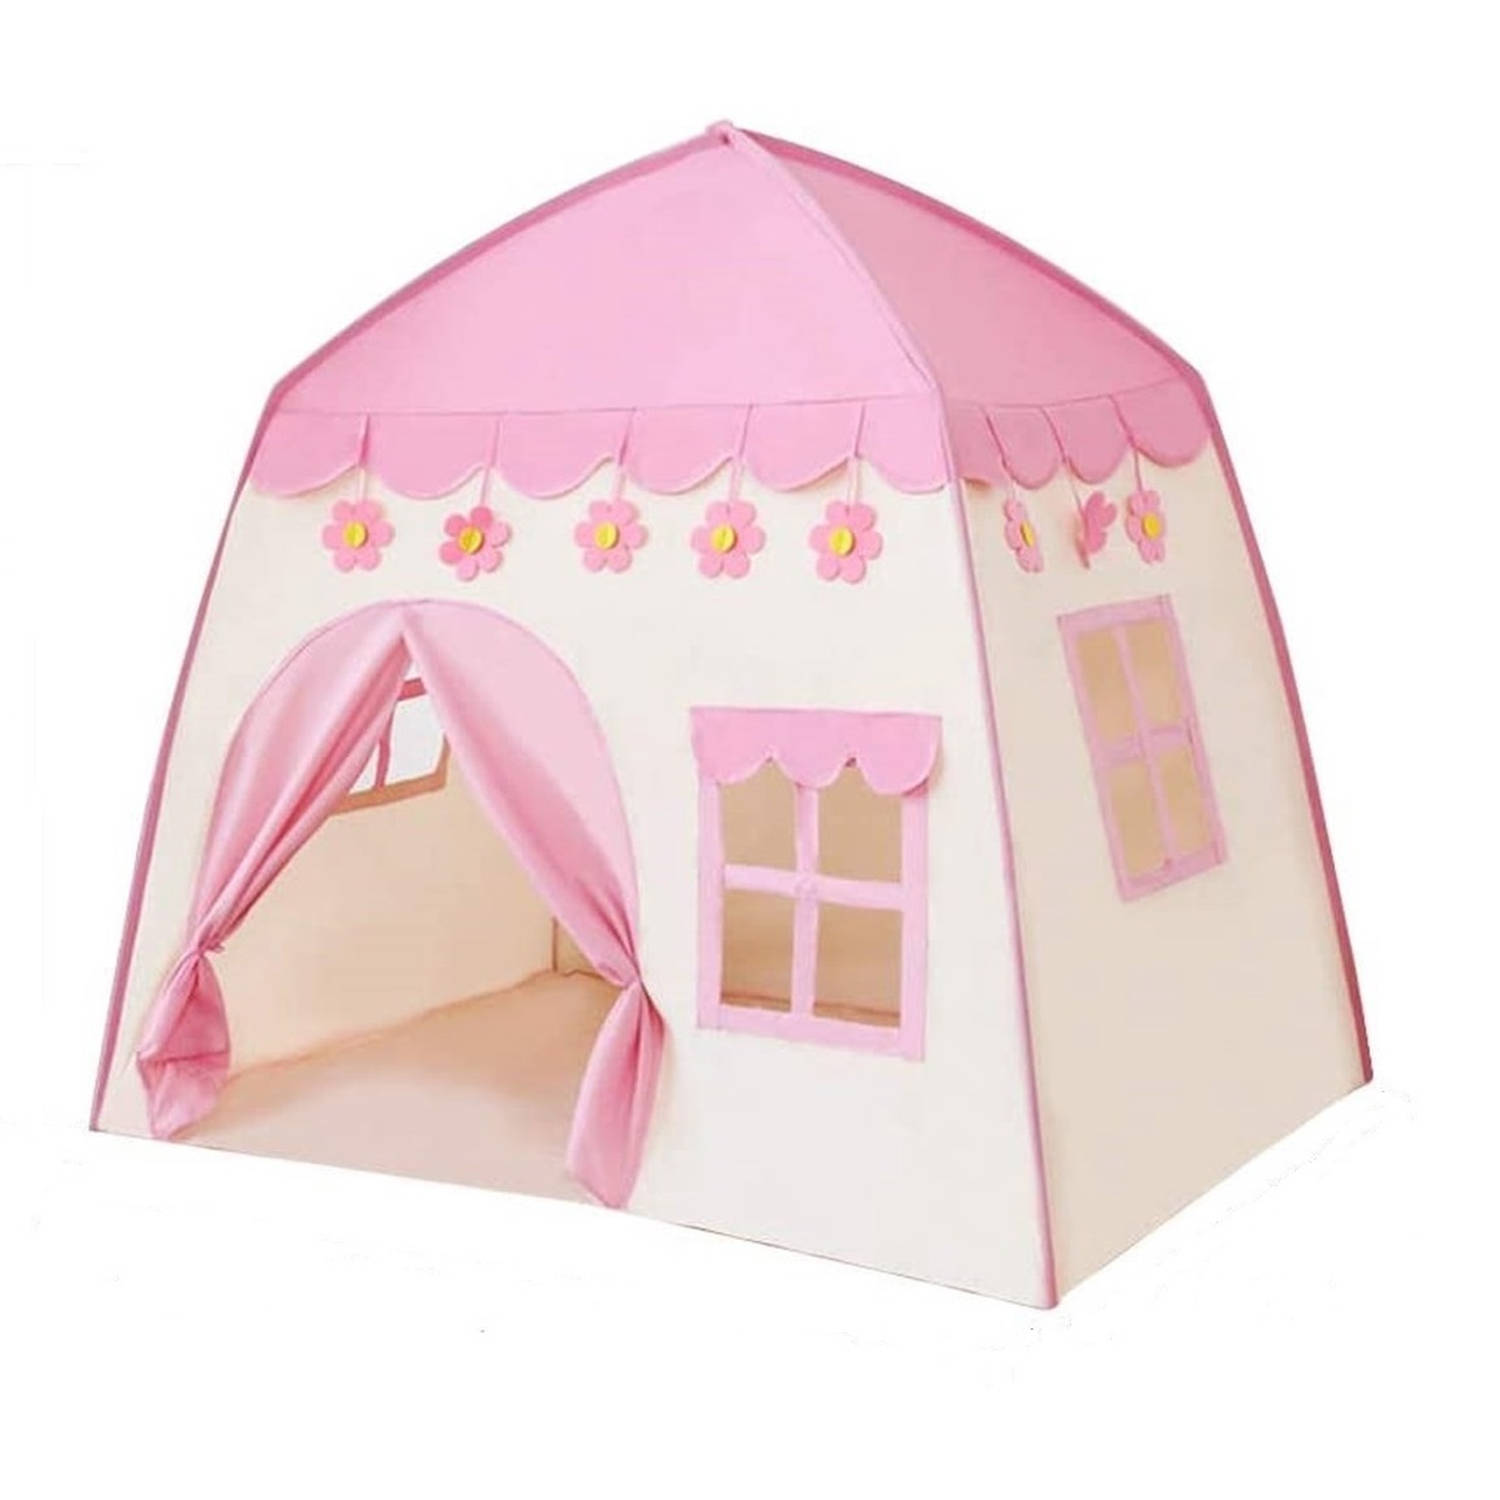 Bobbel Home - Speeltent XL - Met LED-verlichting - Roze Tent - Voor Kinderen